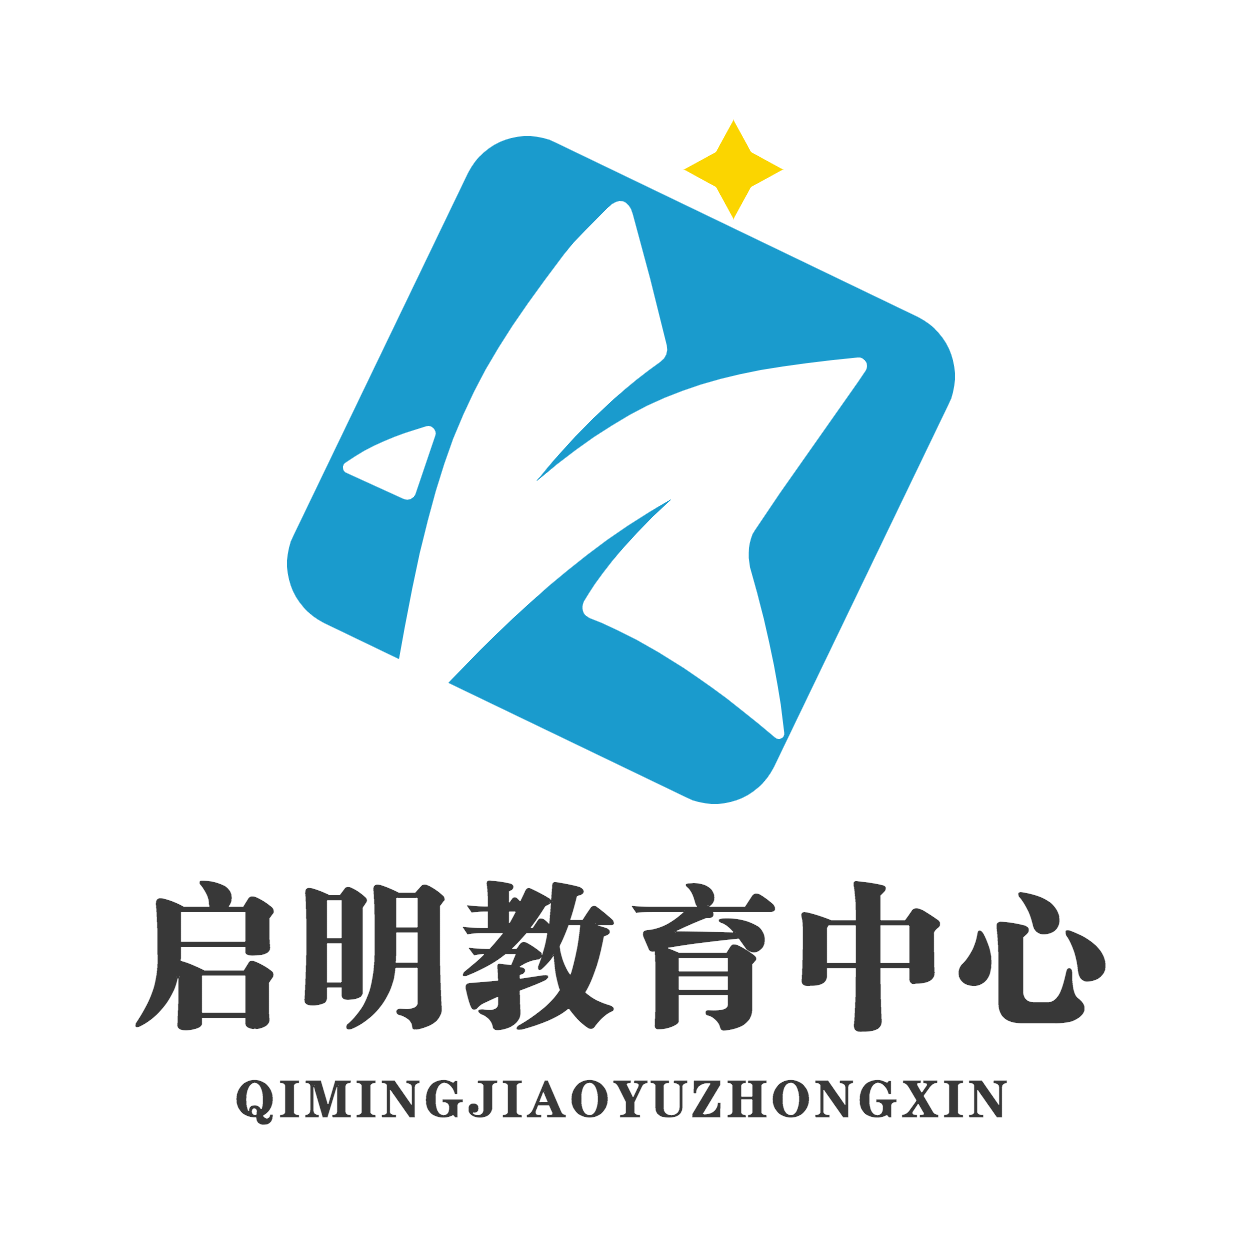 艺术兴趣教育培训头像校徽logo